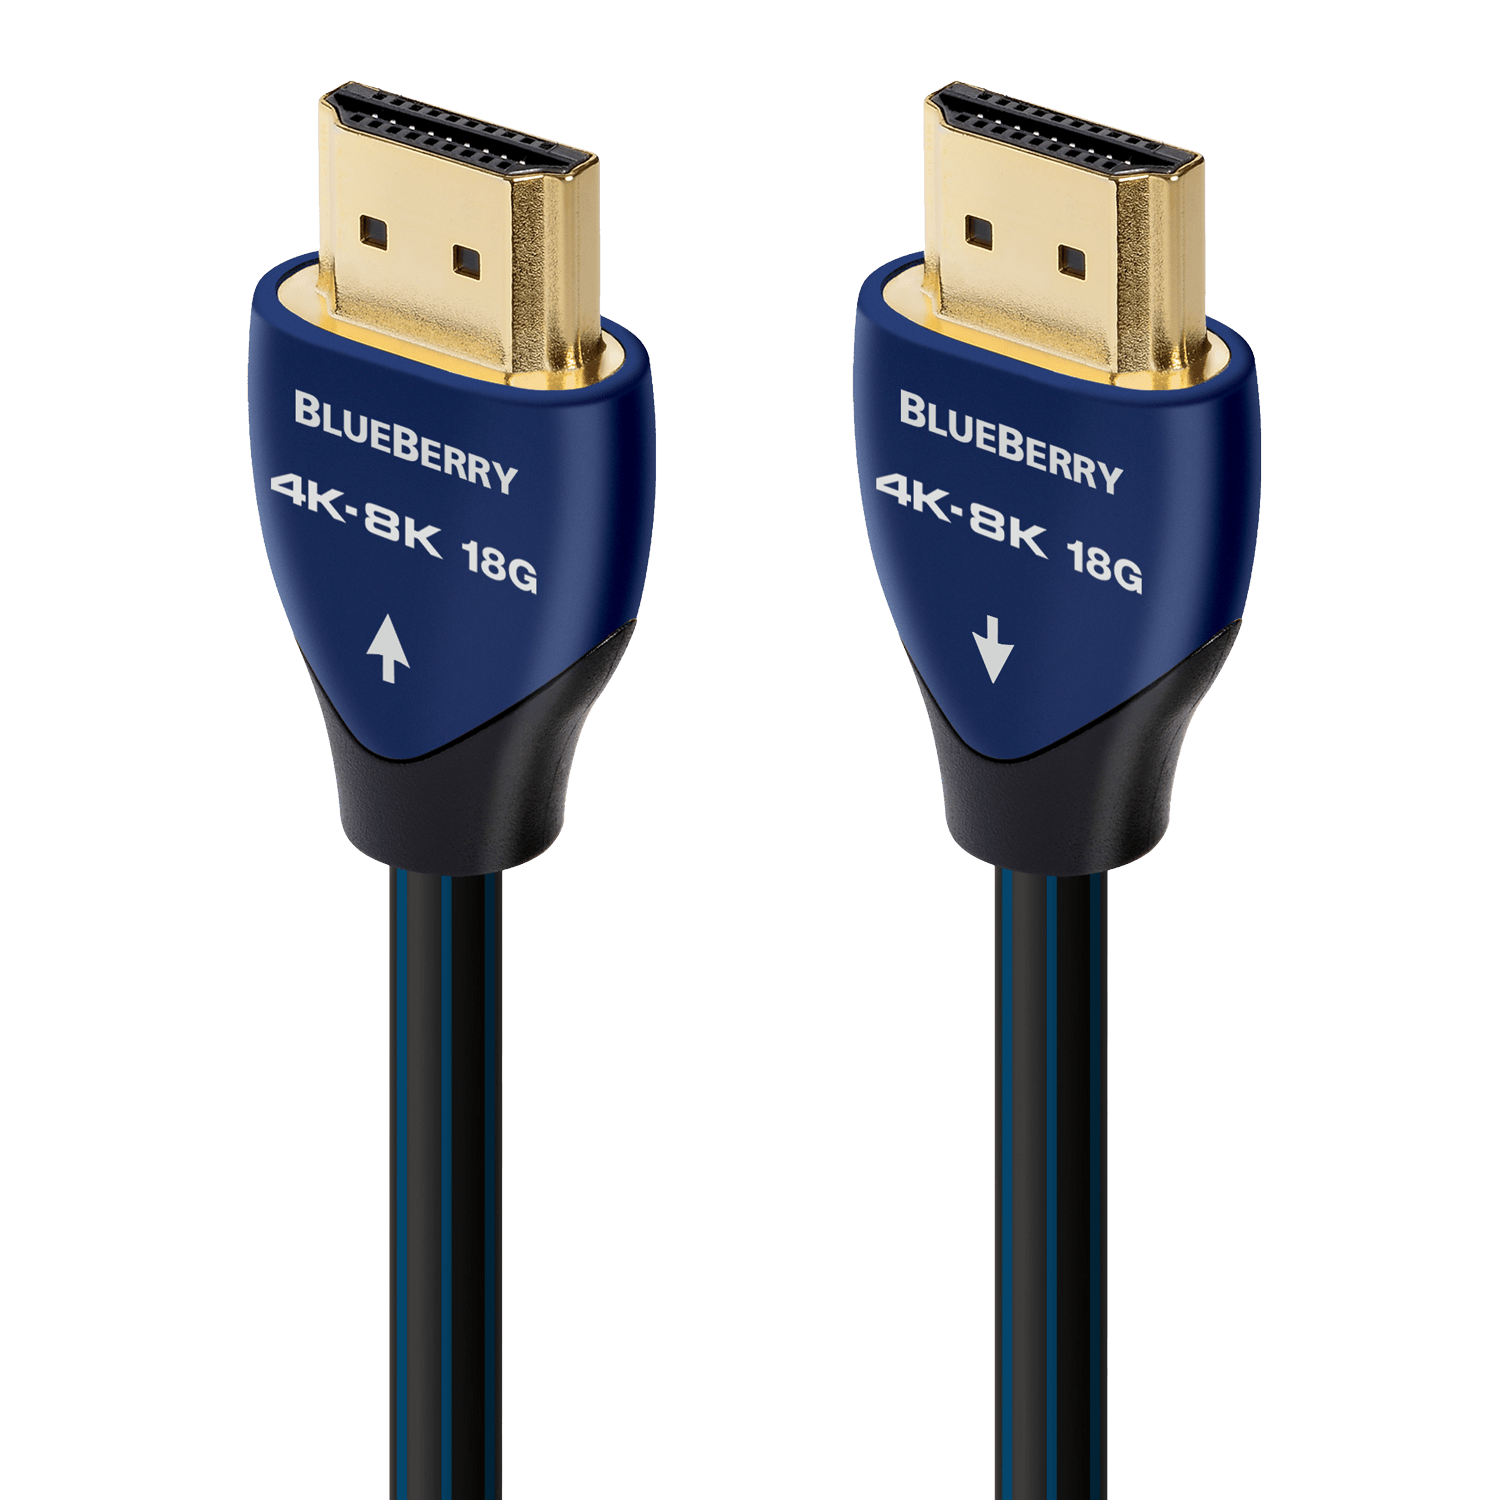 HDMI Cables – AudioQuest